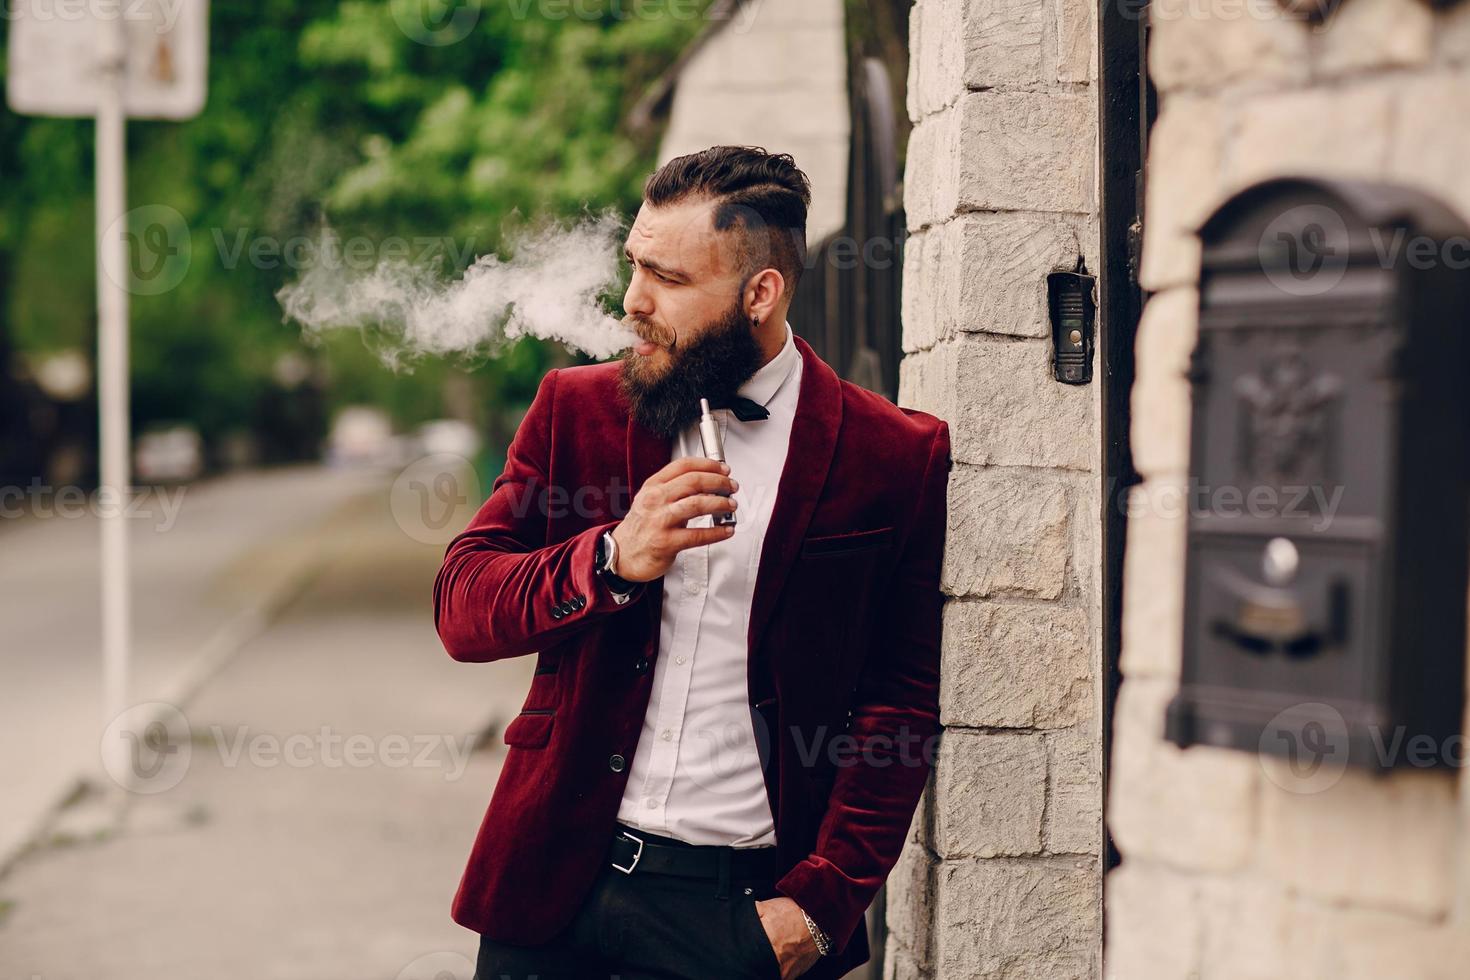 homem barbudo com cigarro foto